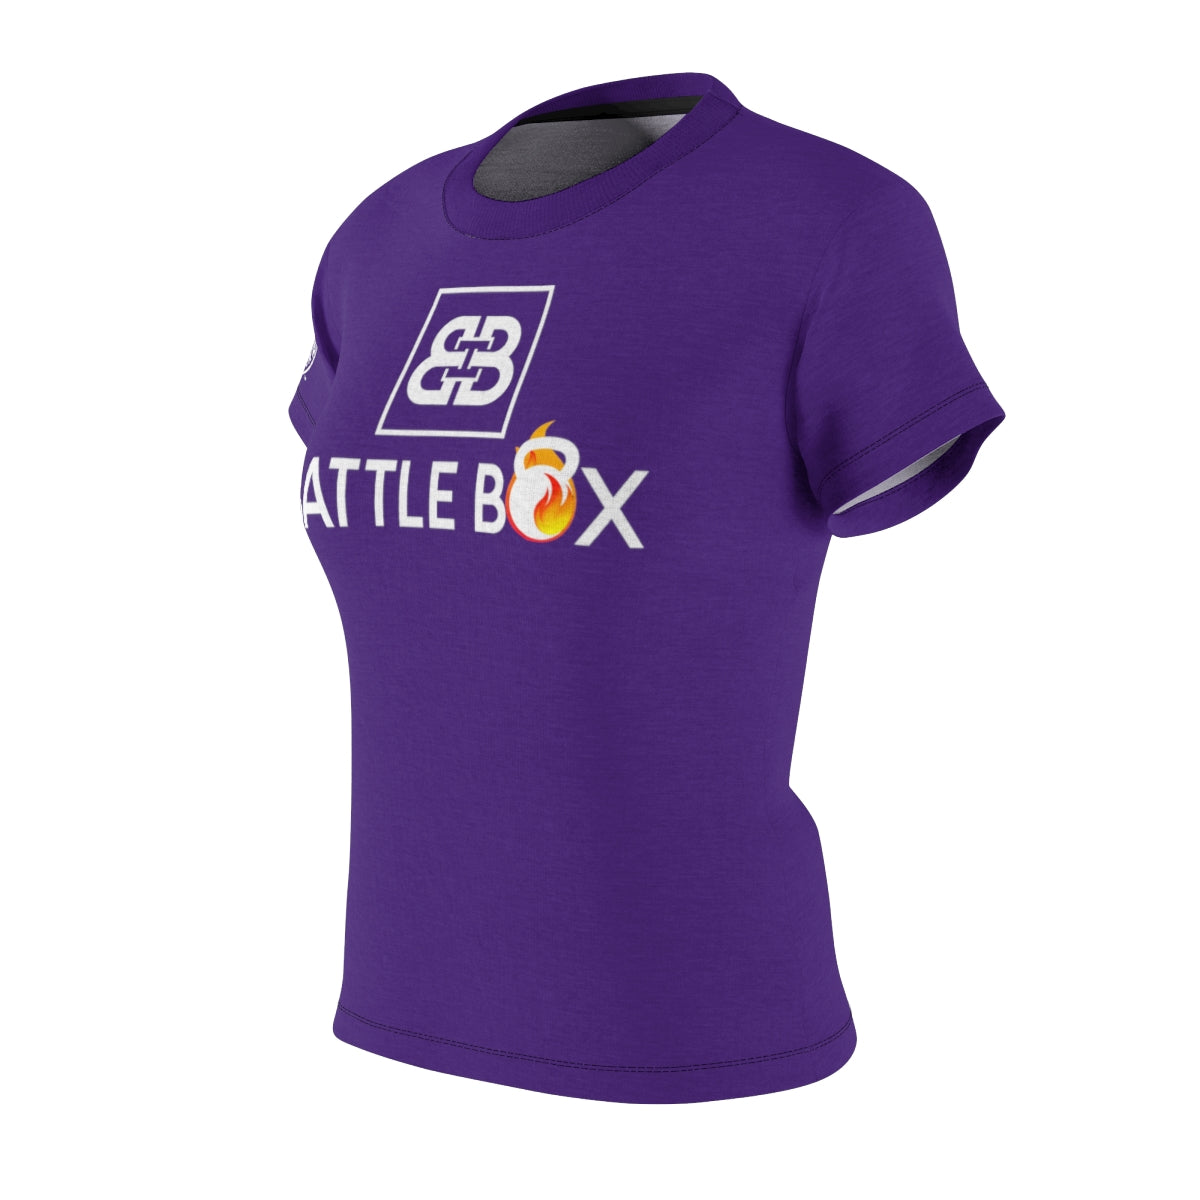 Battle Box Puprle Women's T-Shirt -1A